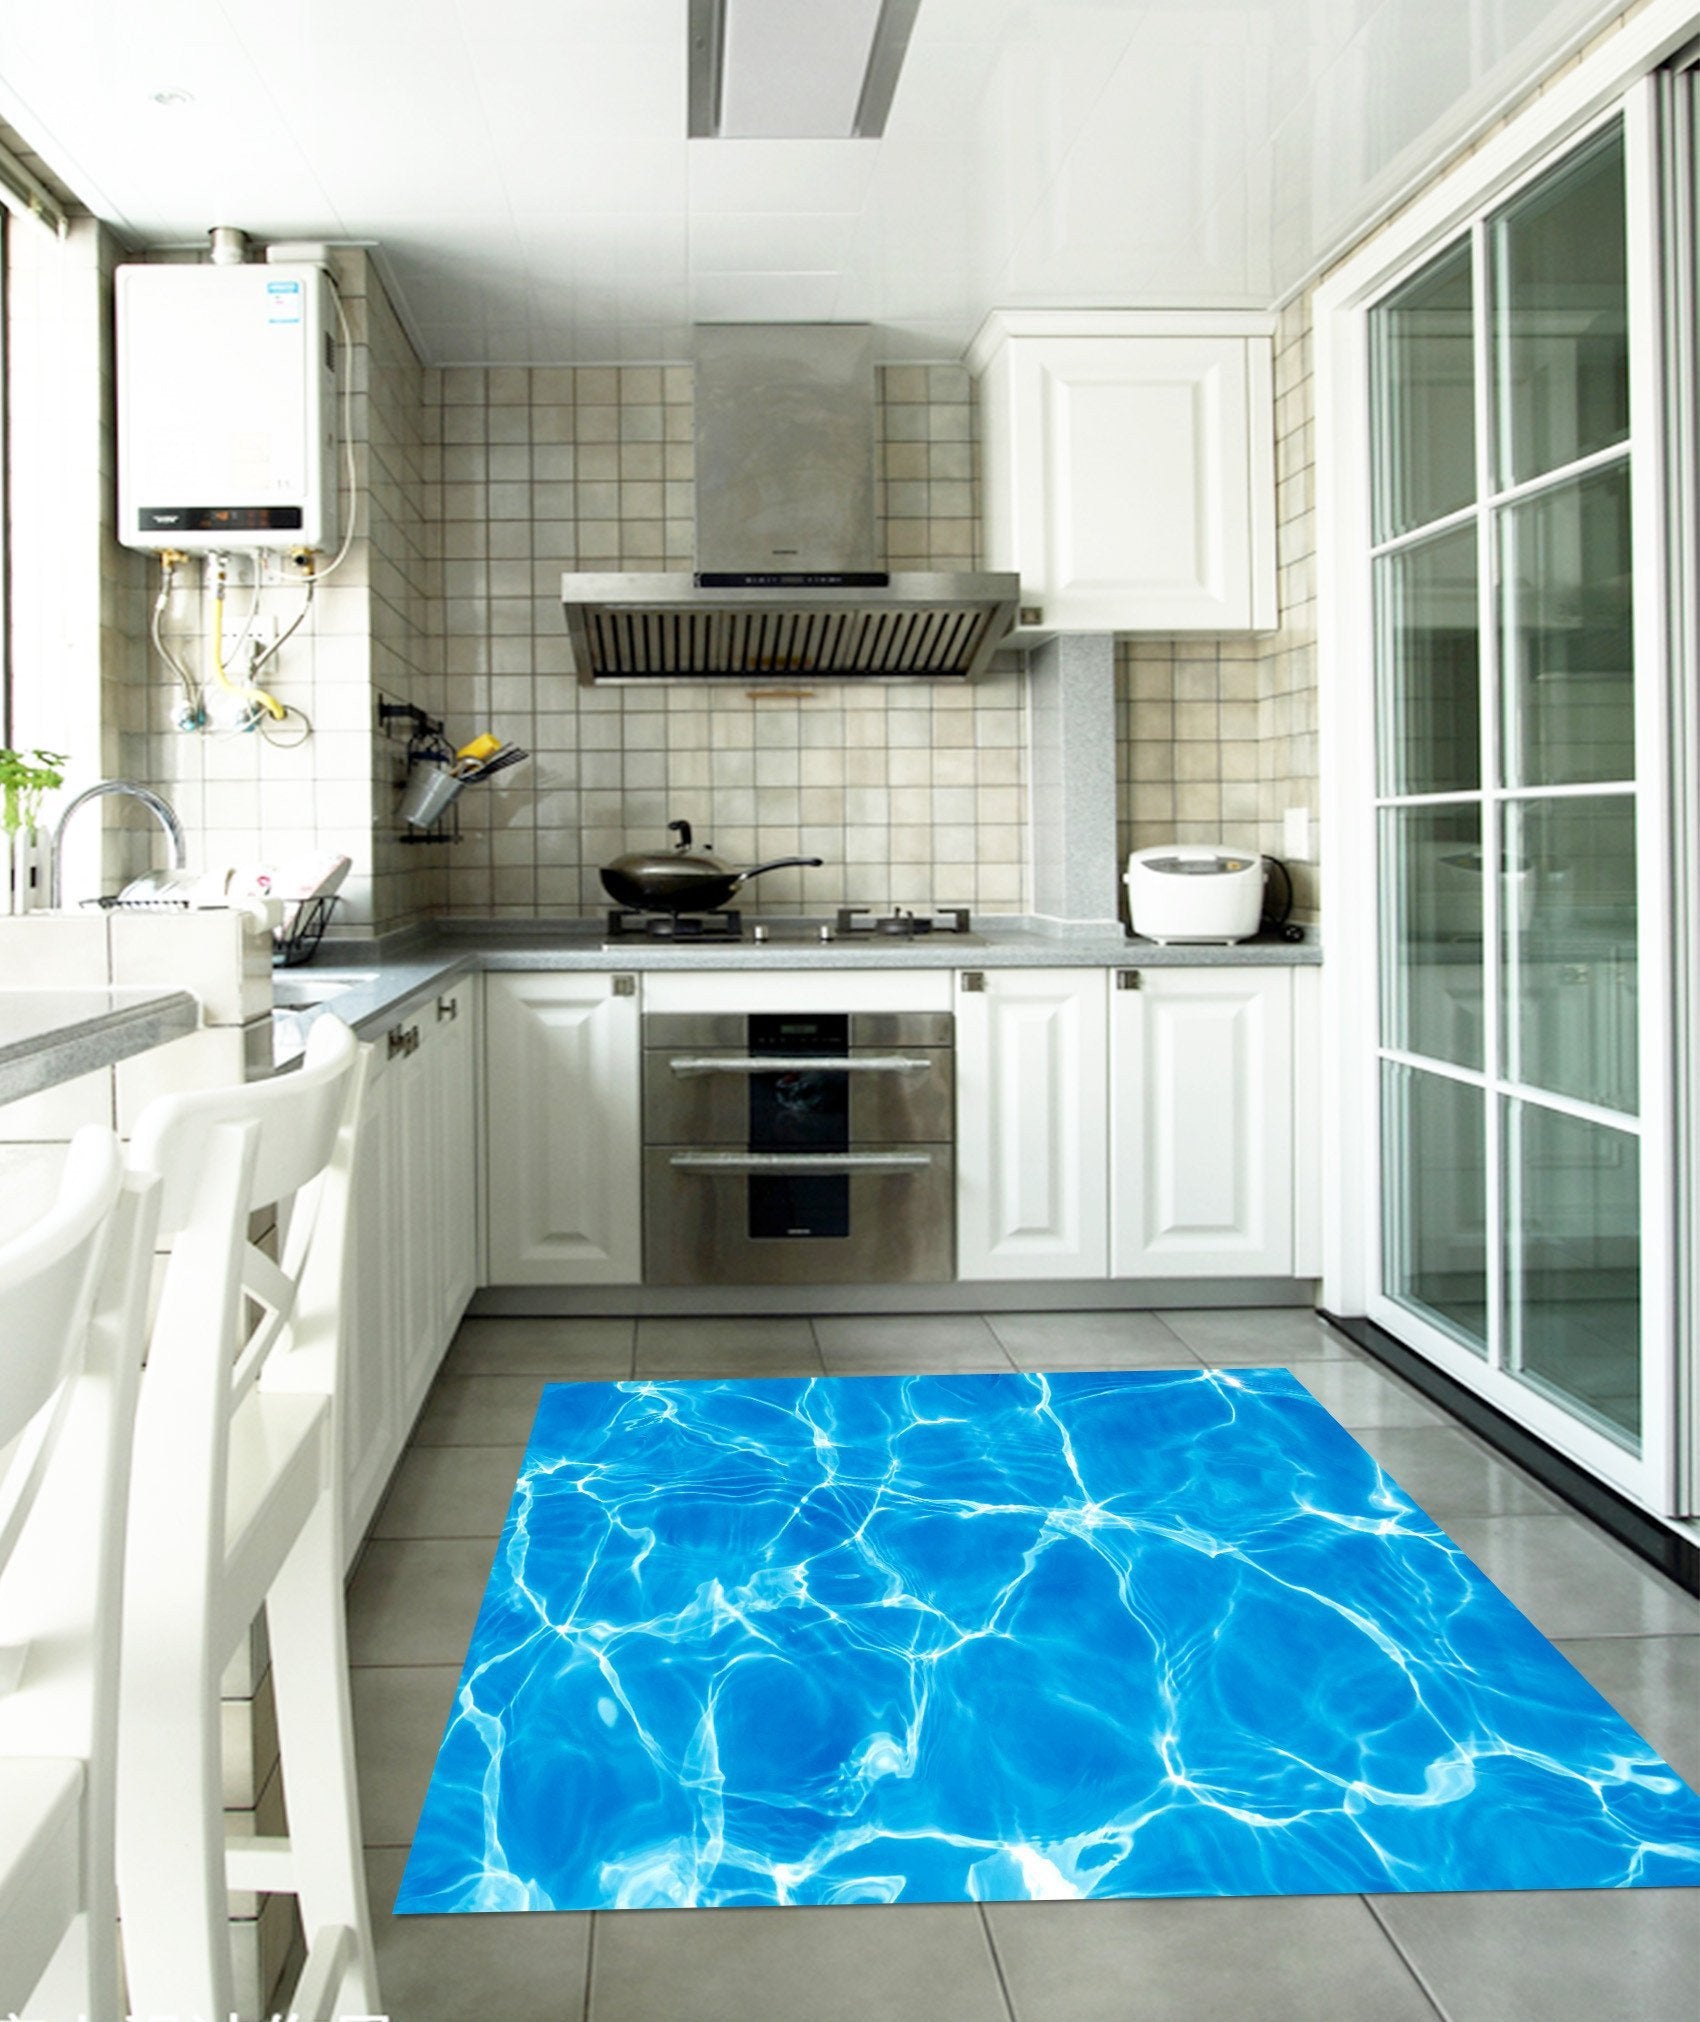 3D Shiny Blue Water Kitchen Mat Floor Mural Wallpaper AJ Wallpaper 